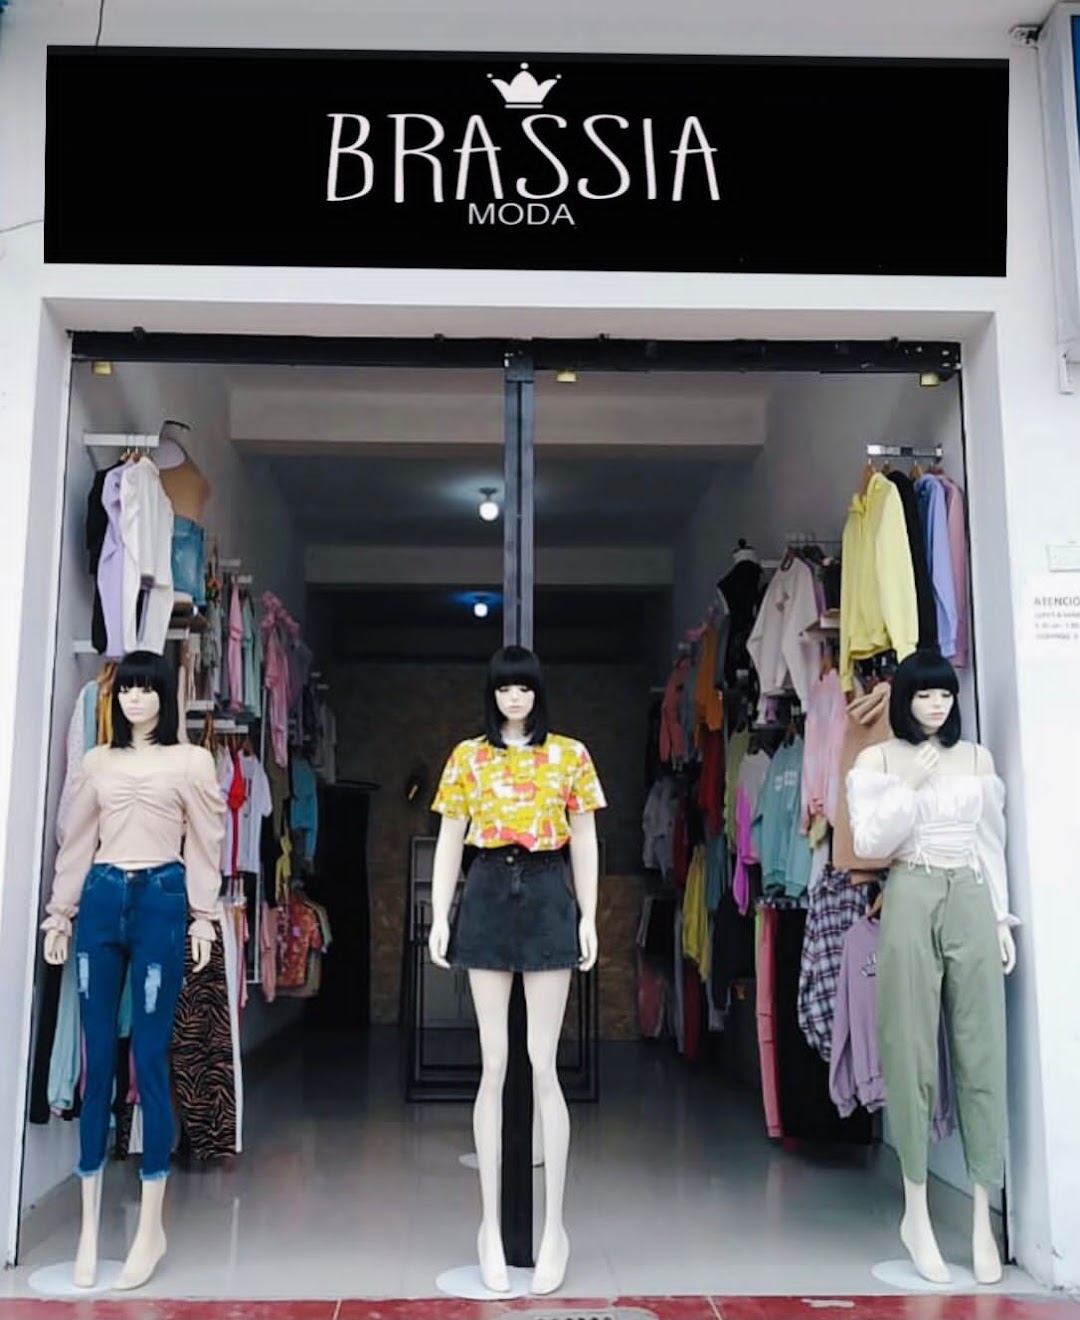 Brassia moda